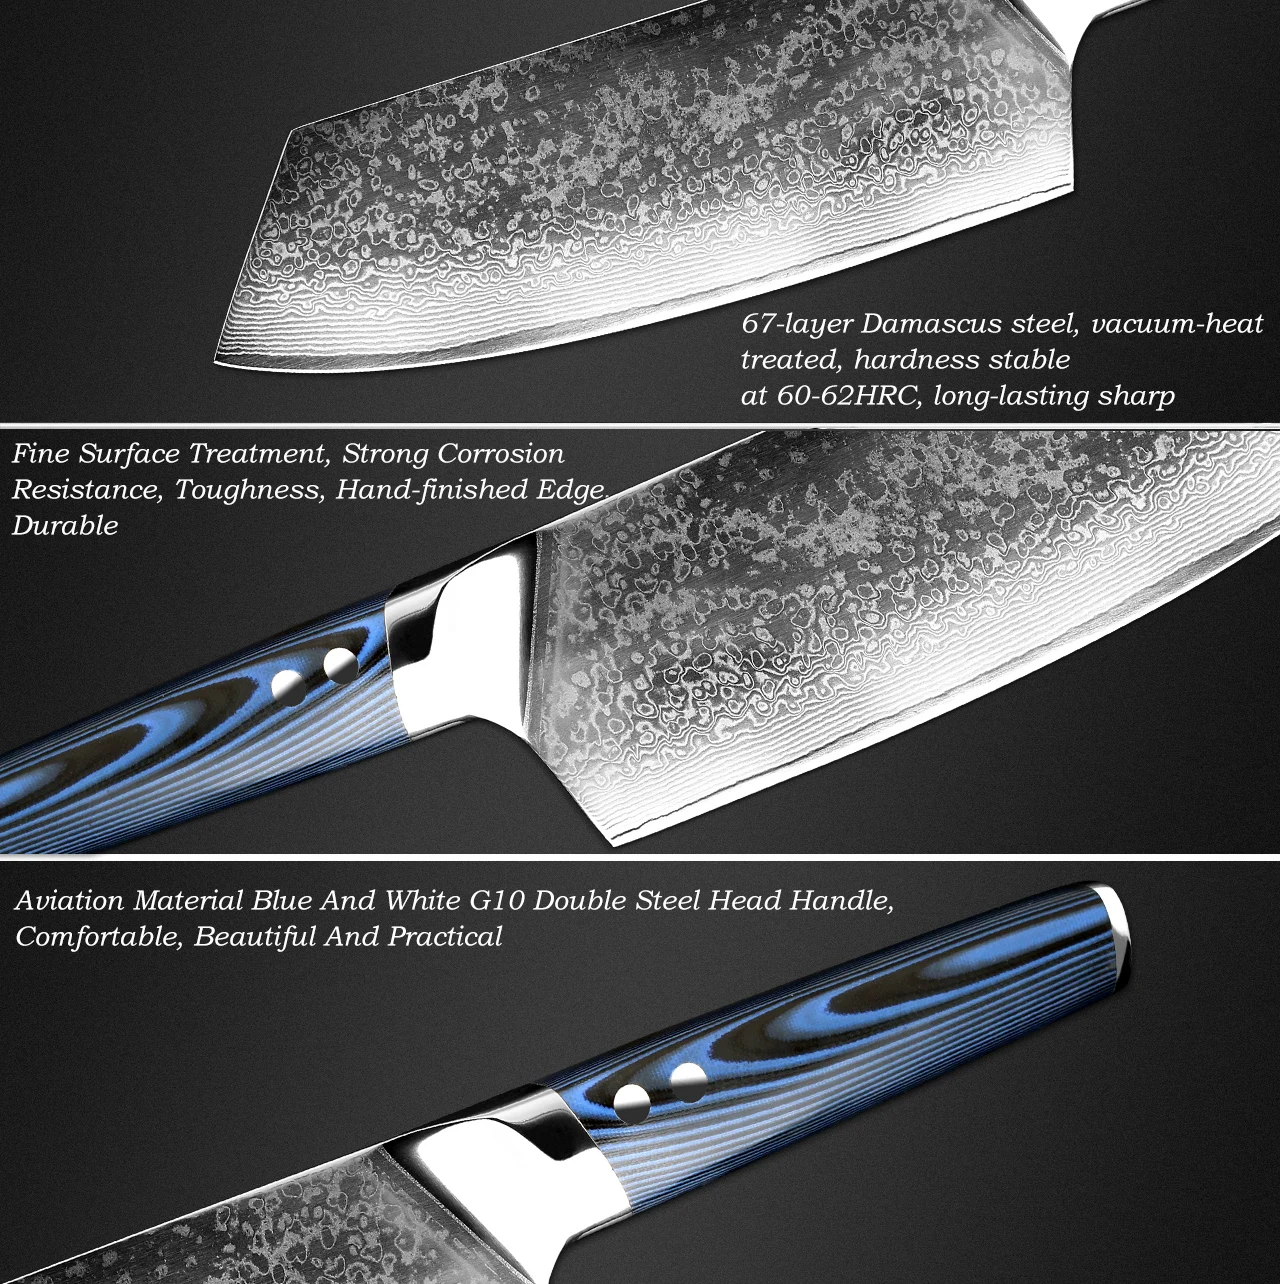 XITUO поварские ножи vg10 японский дамасский кухонный нож из нержавеющей стали Профессиональная кухонная утварь Инструмент Синий G10 ручка